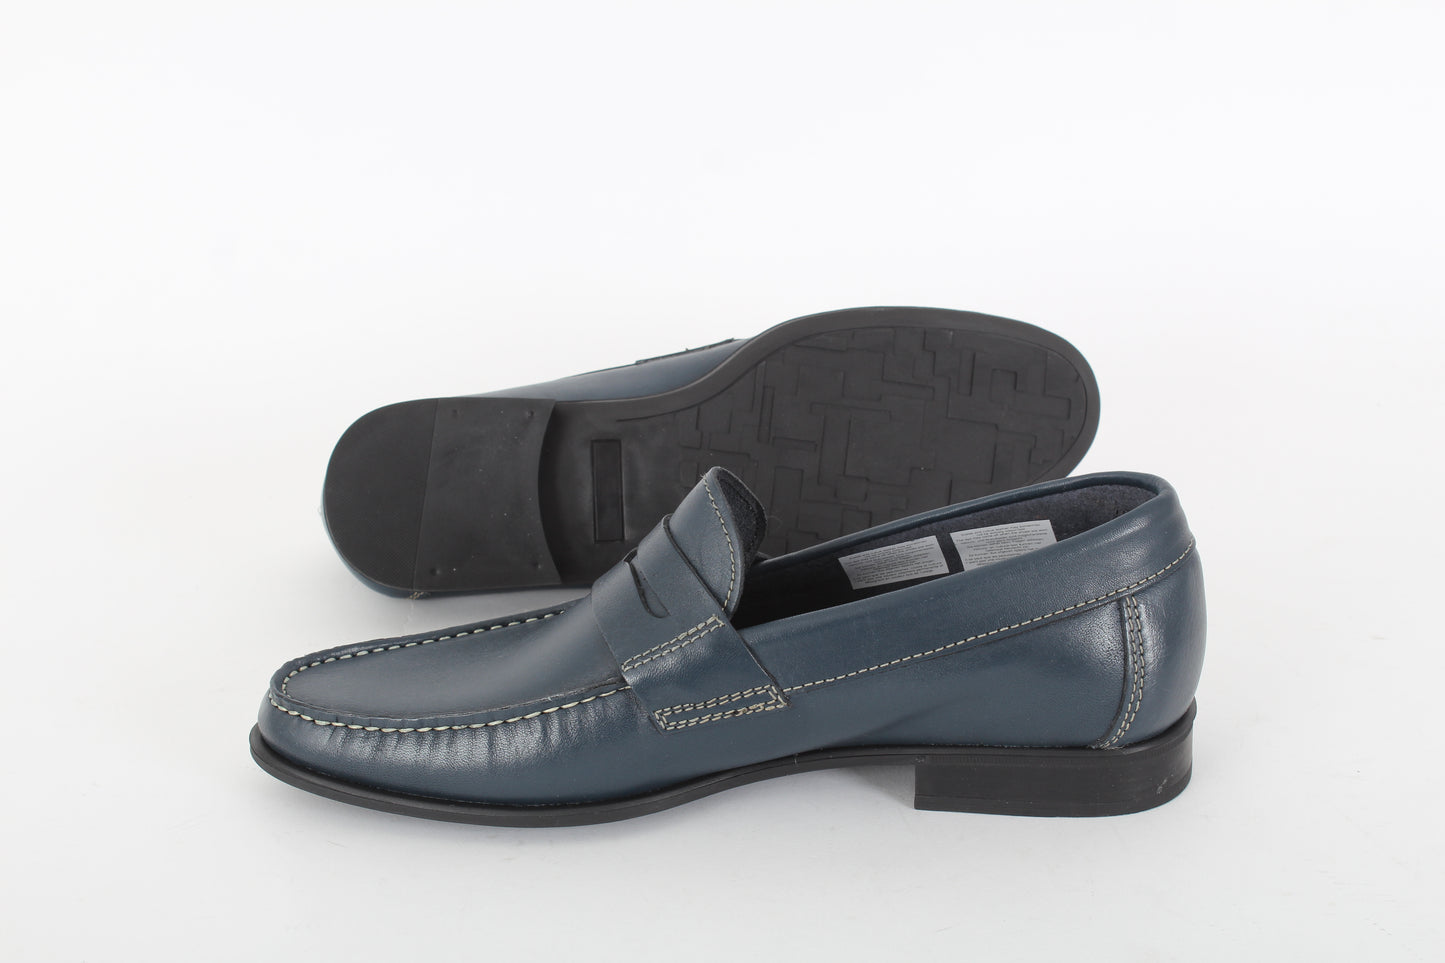 ARIZONA JOE Classic loafers